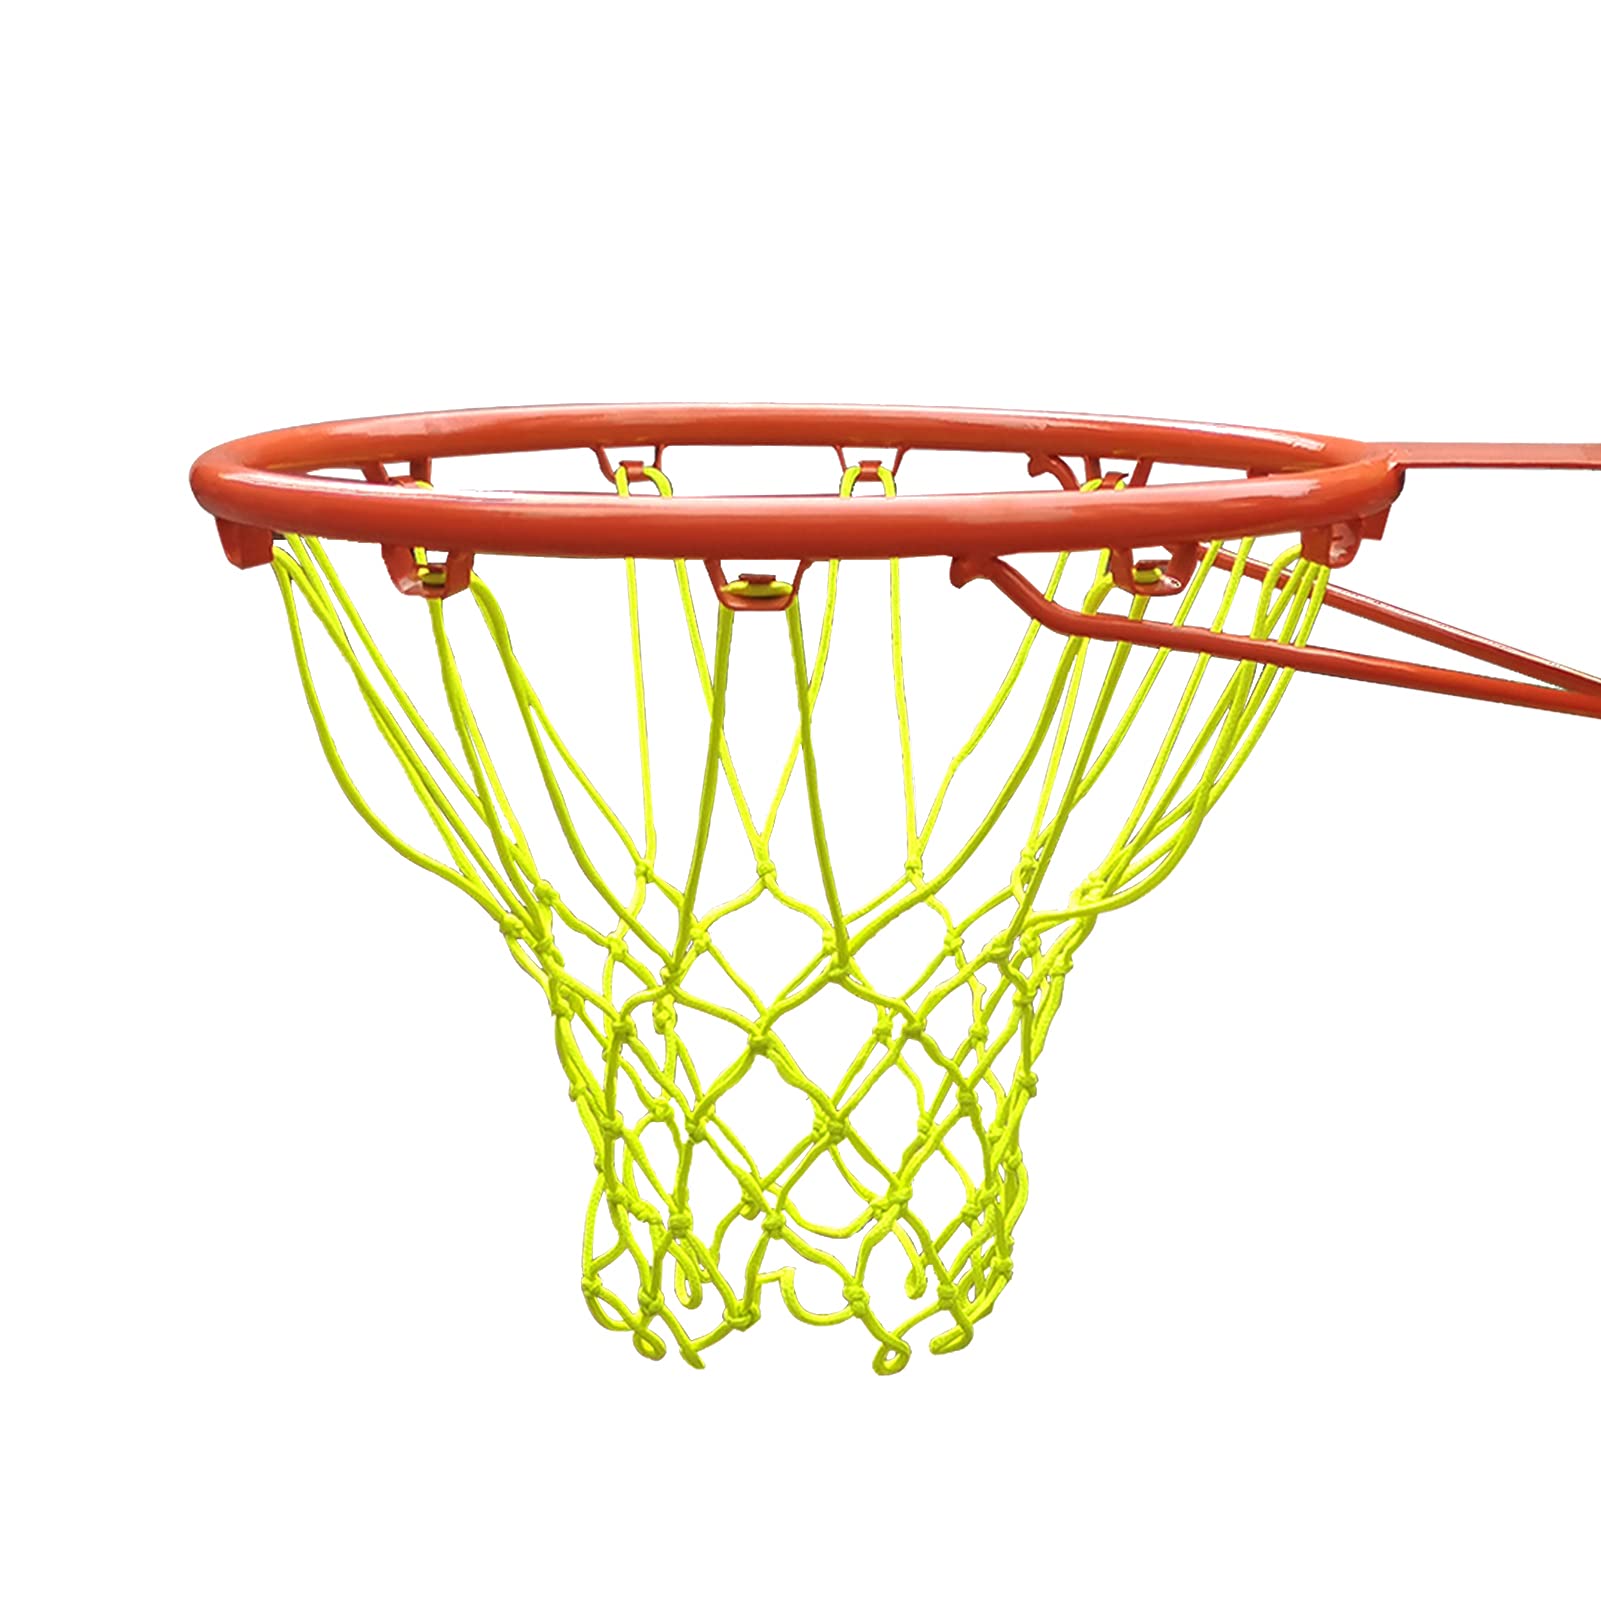 TOKBELT Basketball Net Heavy Duty Basketball Net Replacement Parts